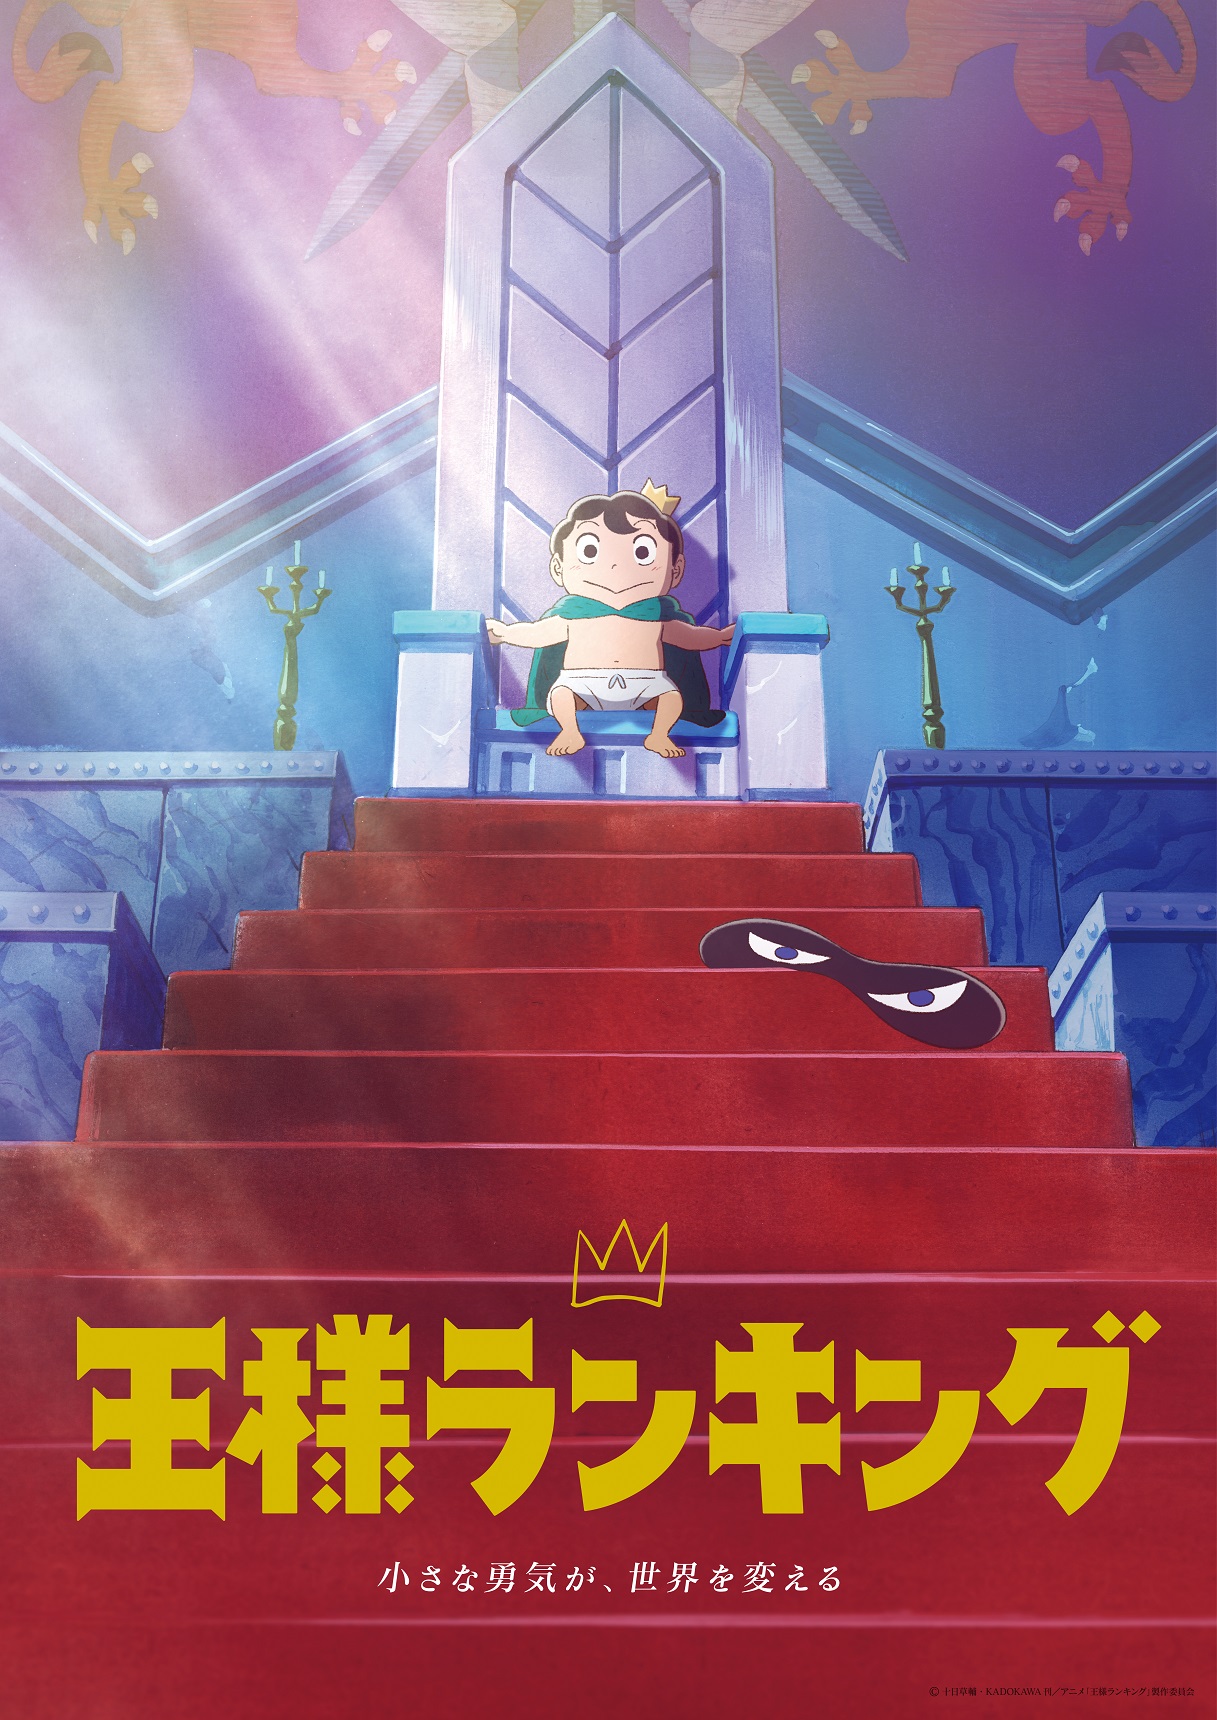 Tvアニメ 王様ランキング Blu Ray Dvd Box オリジナルサウンドトラック 発売決定 各巻の特典内容も公開 株式会社アニプレックスのプレスリリース